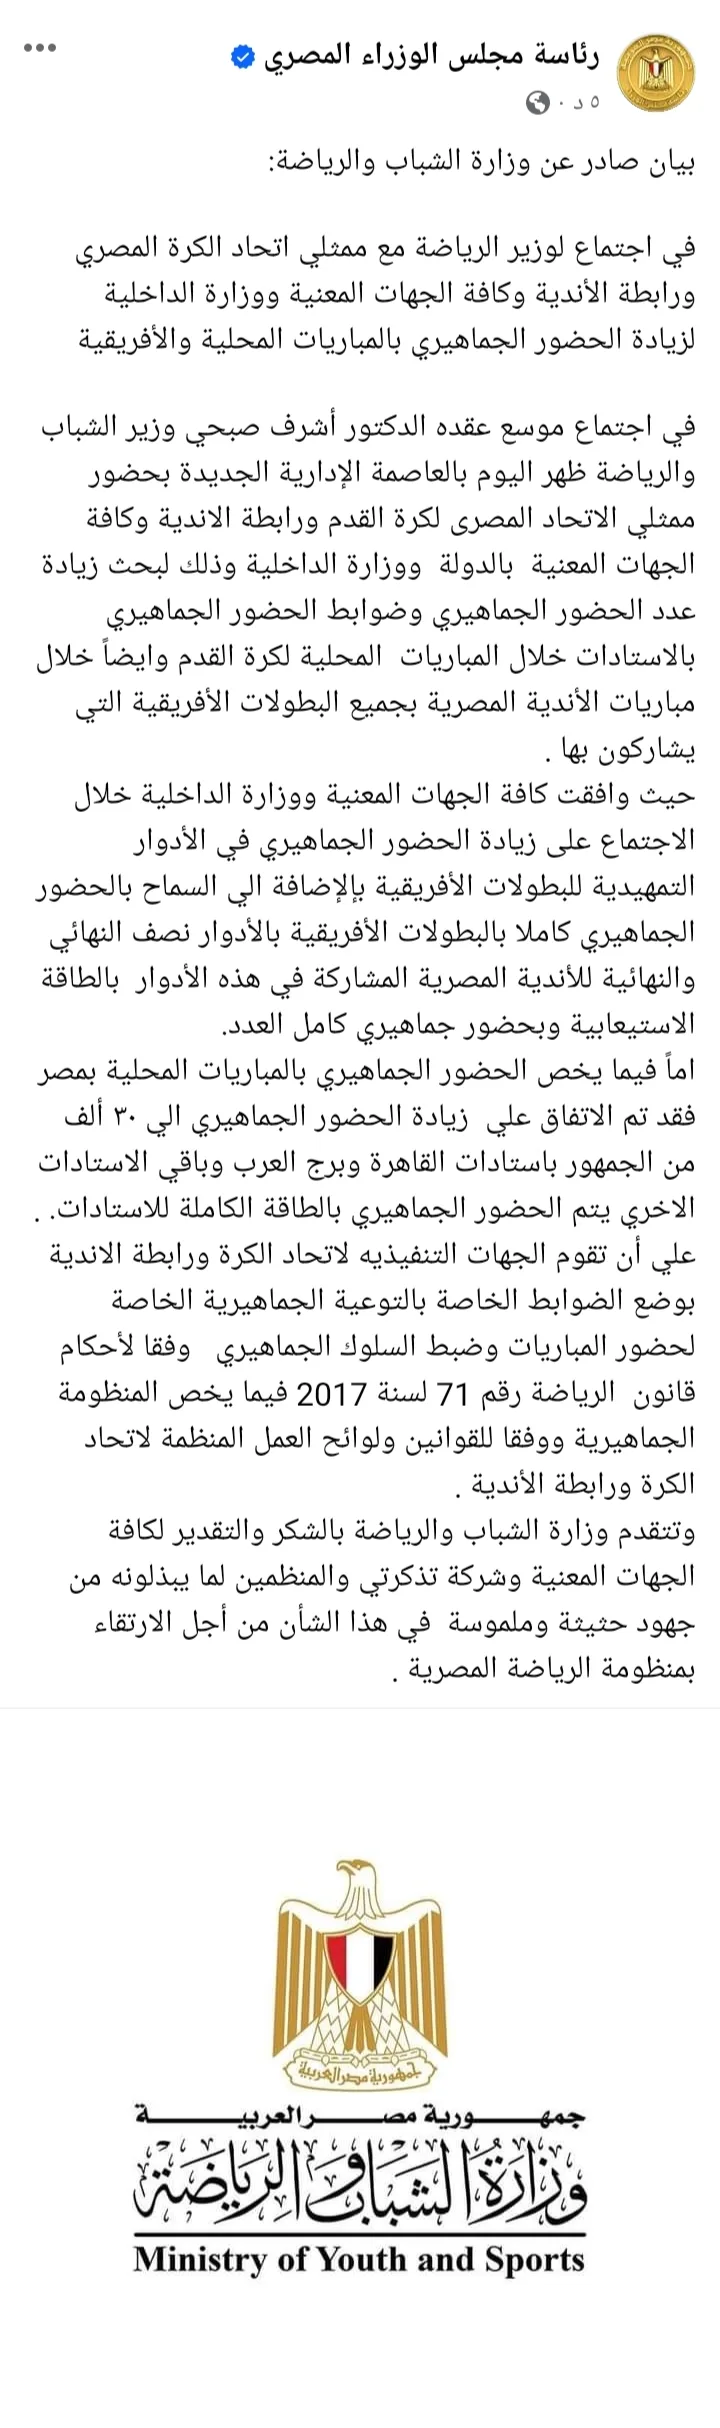 عاجل - وزارة الرياضة تعلن عودة السعة الكاملة لمدرجات الكرة المصرية !! - صورة